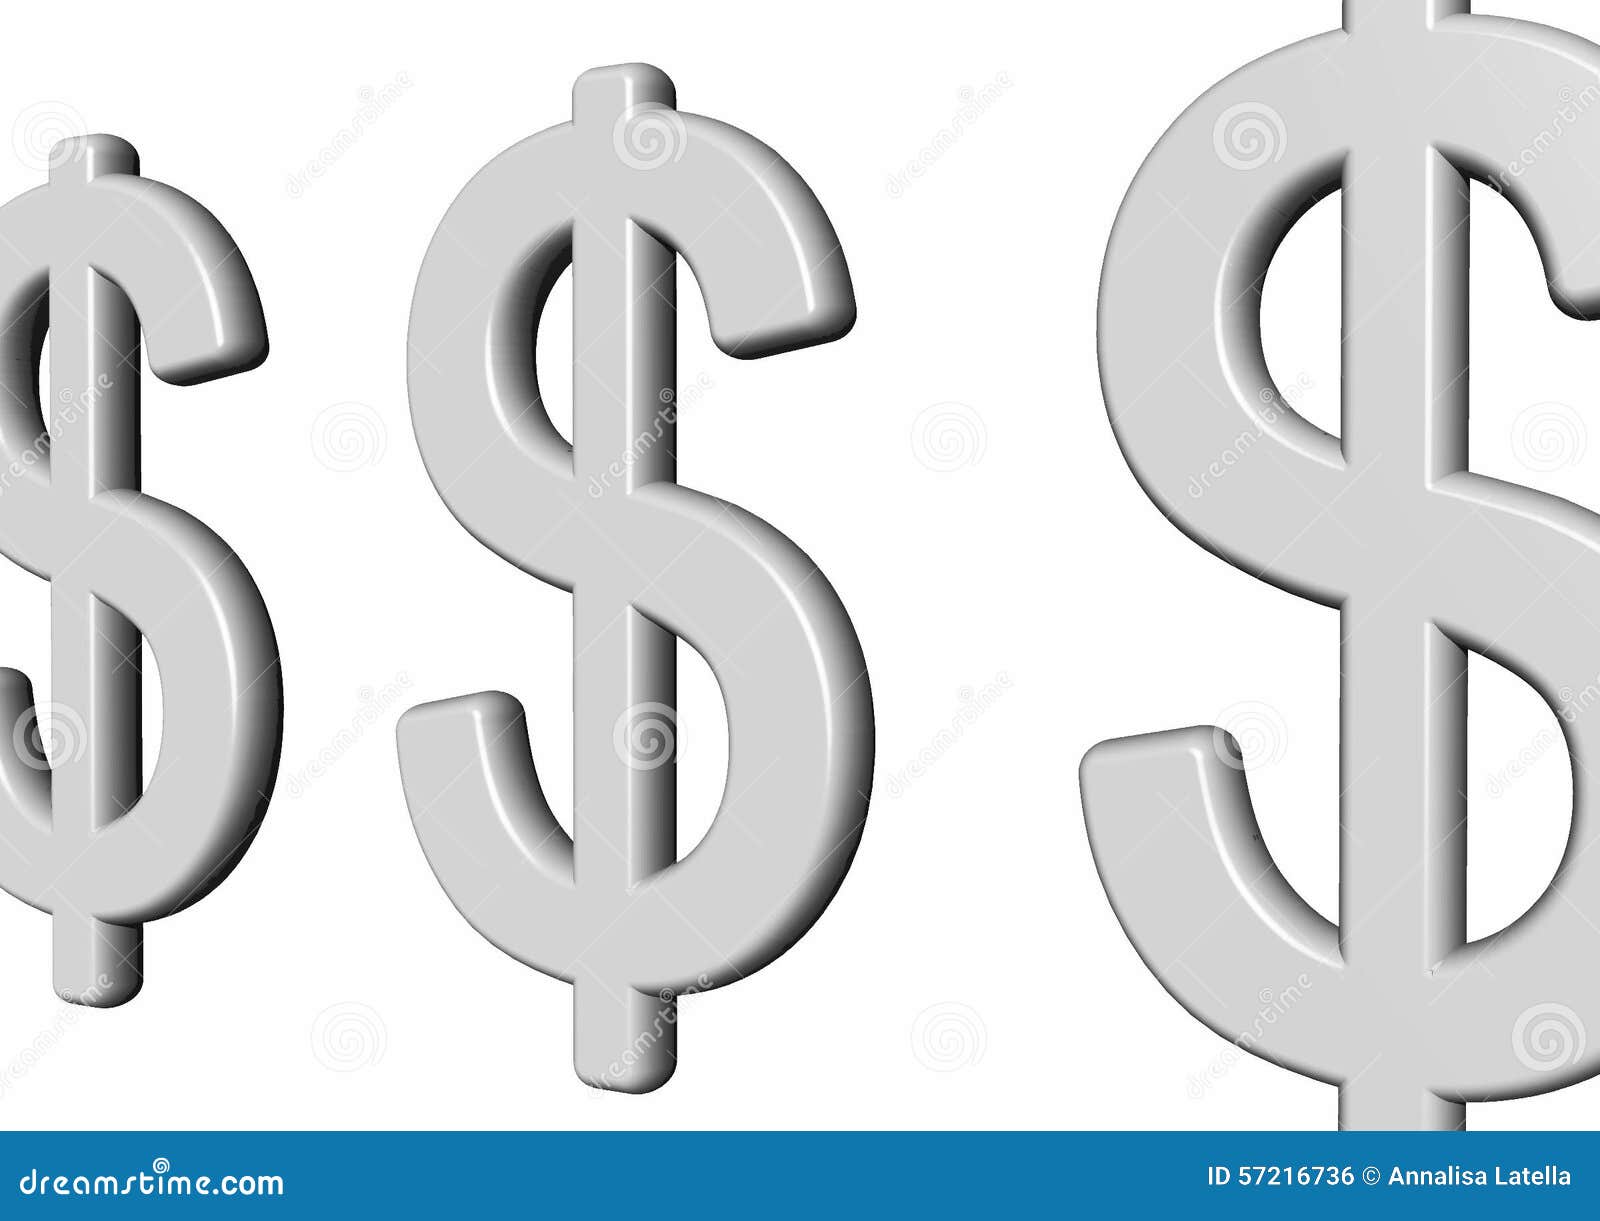 Евро доллары песня. Как рисуется доллар и евро. Символ доллара гкркулесовы столбы. Знак доллара на стене ниша. Значок доллара на приборе рубеж.